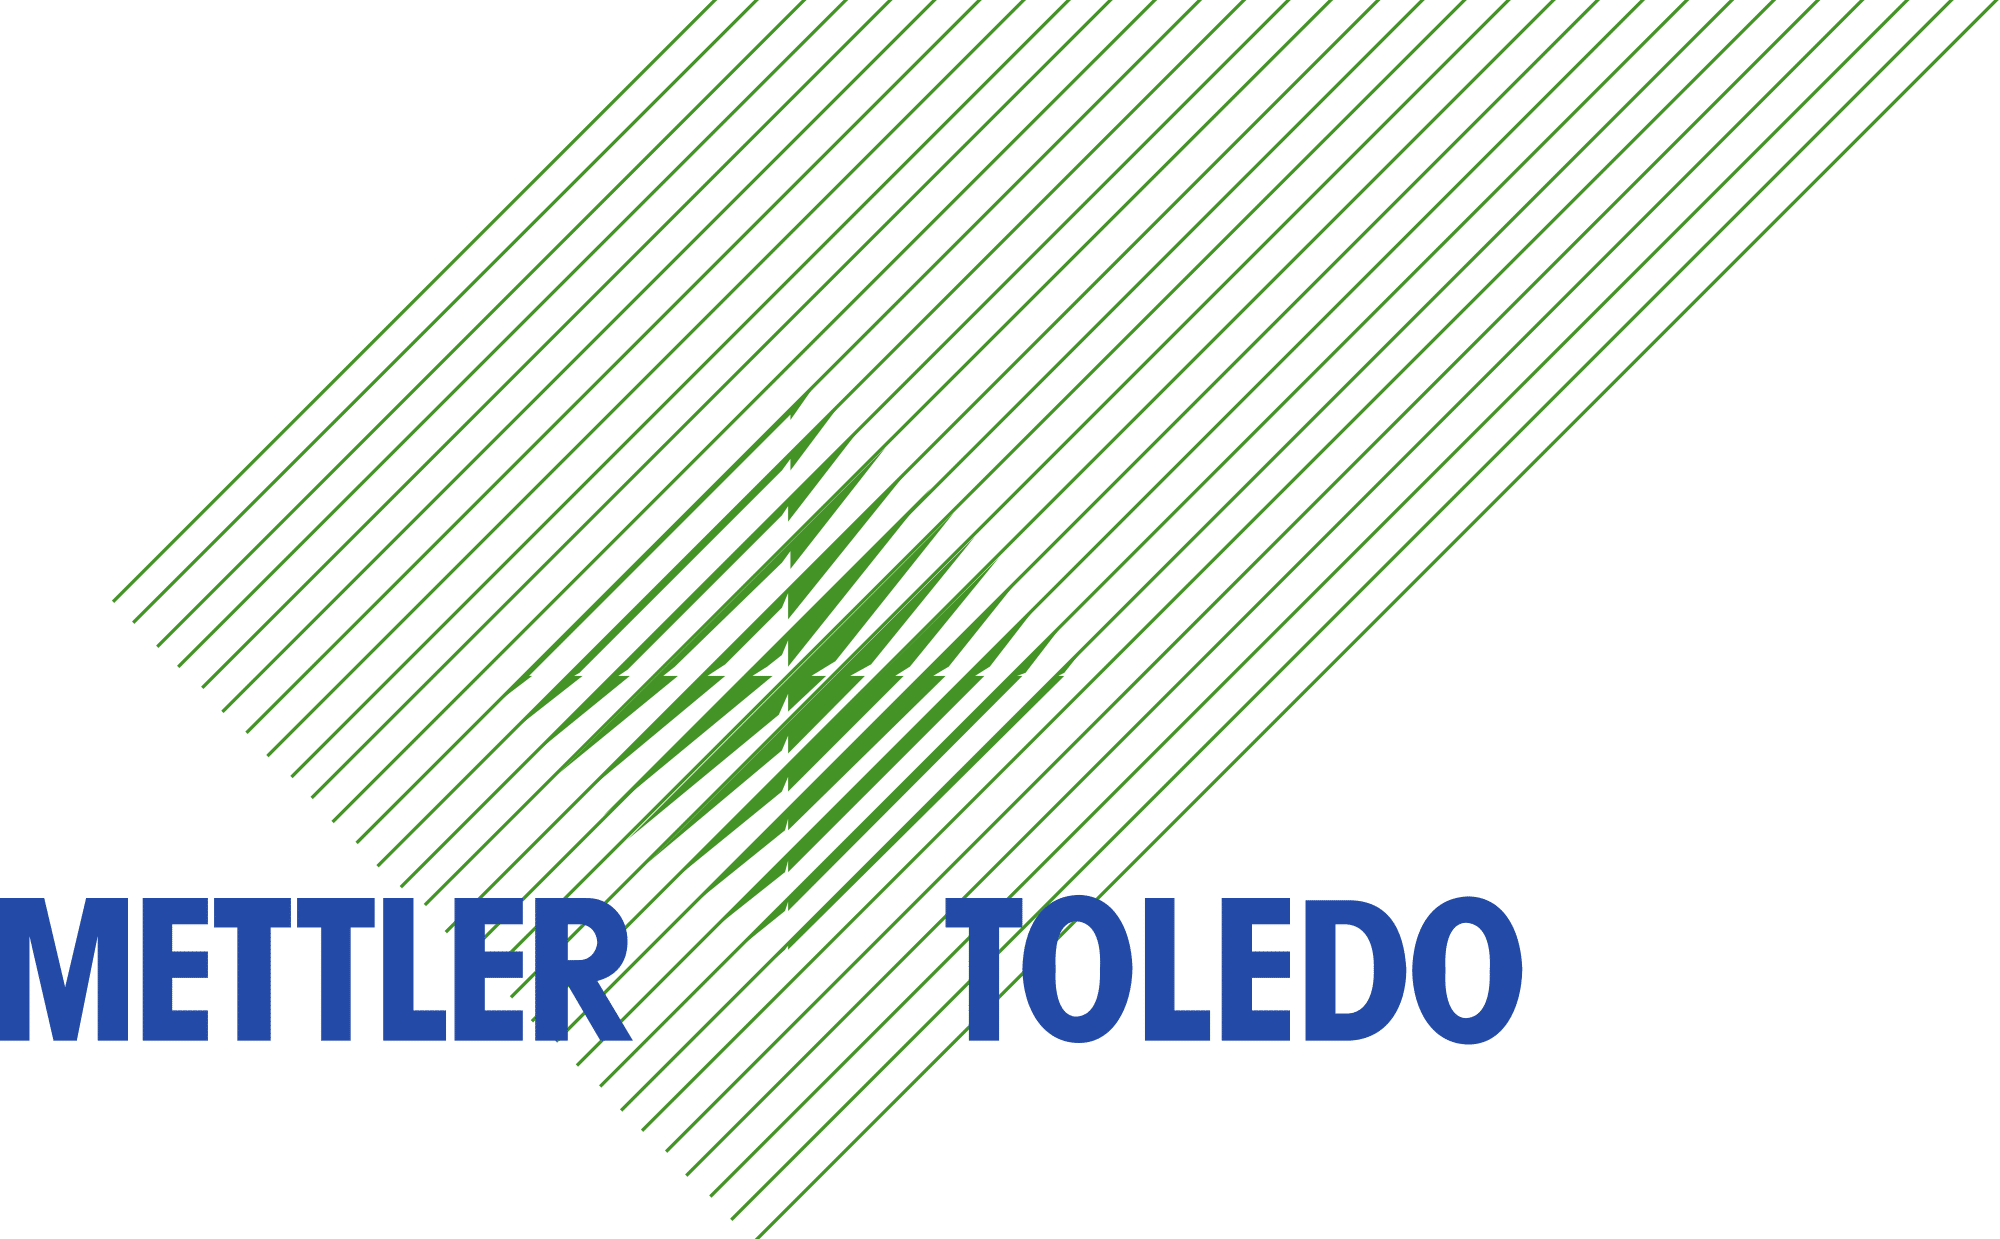 Mettler Toledo Logo